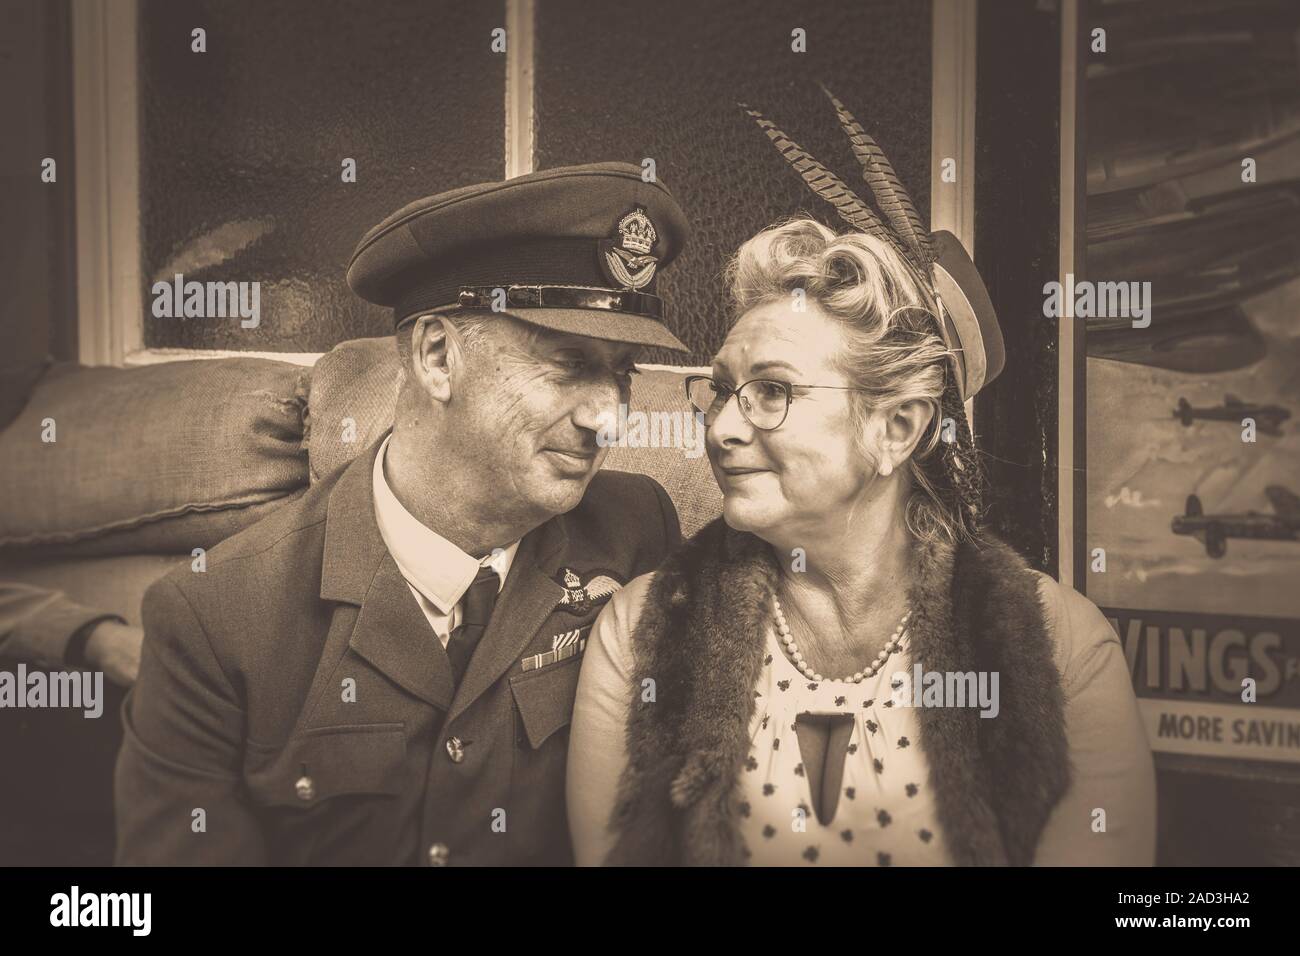 Vintage Sepia Nahaufnahme 1940er verliebten Paar, sitzen am Heritage Bahnhof Abschied sagen; Severn Valley Railway 1940er Veranstaltung. Wir werden uns wieder treffen. Stockfoto